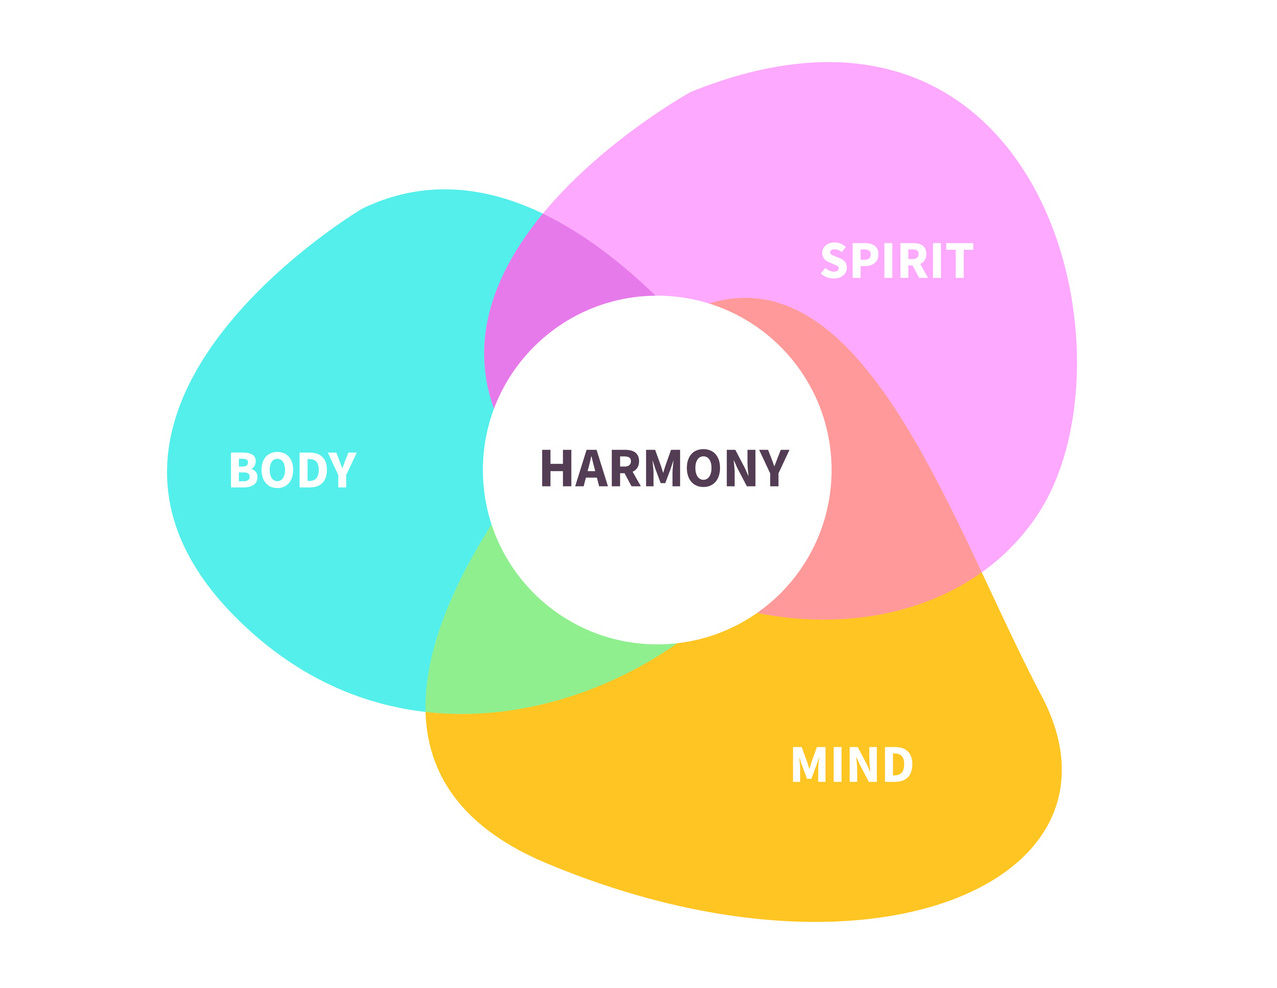 Body, spirit, harmony, mind